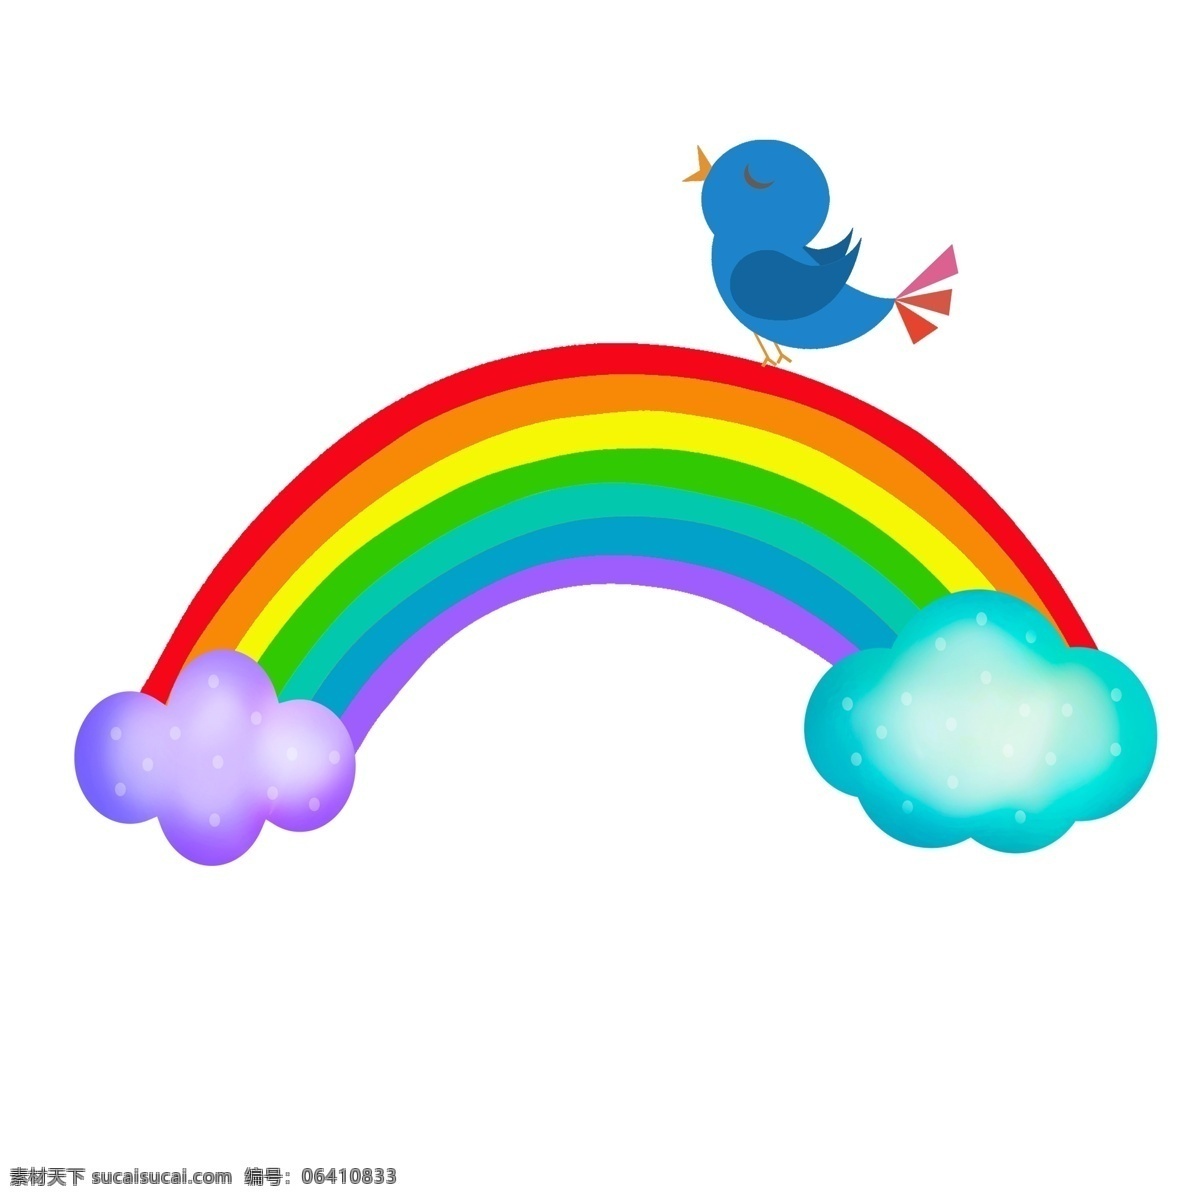 儿童节 卡通 彩虹 云朵 卡通彩虹 卡通云朵 卡通小鸟 儿童节装饰 卡通装饰 彩色云朵 童年 儿童节快乐